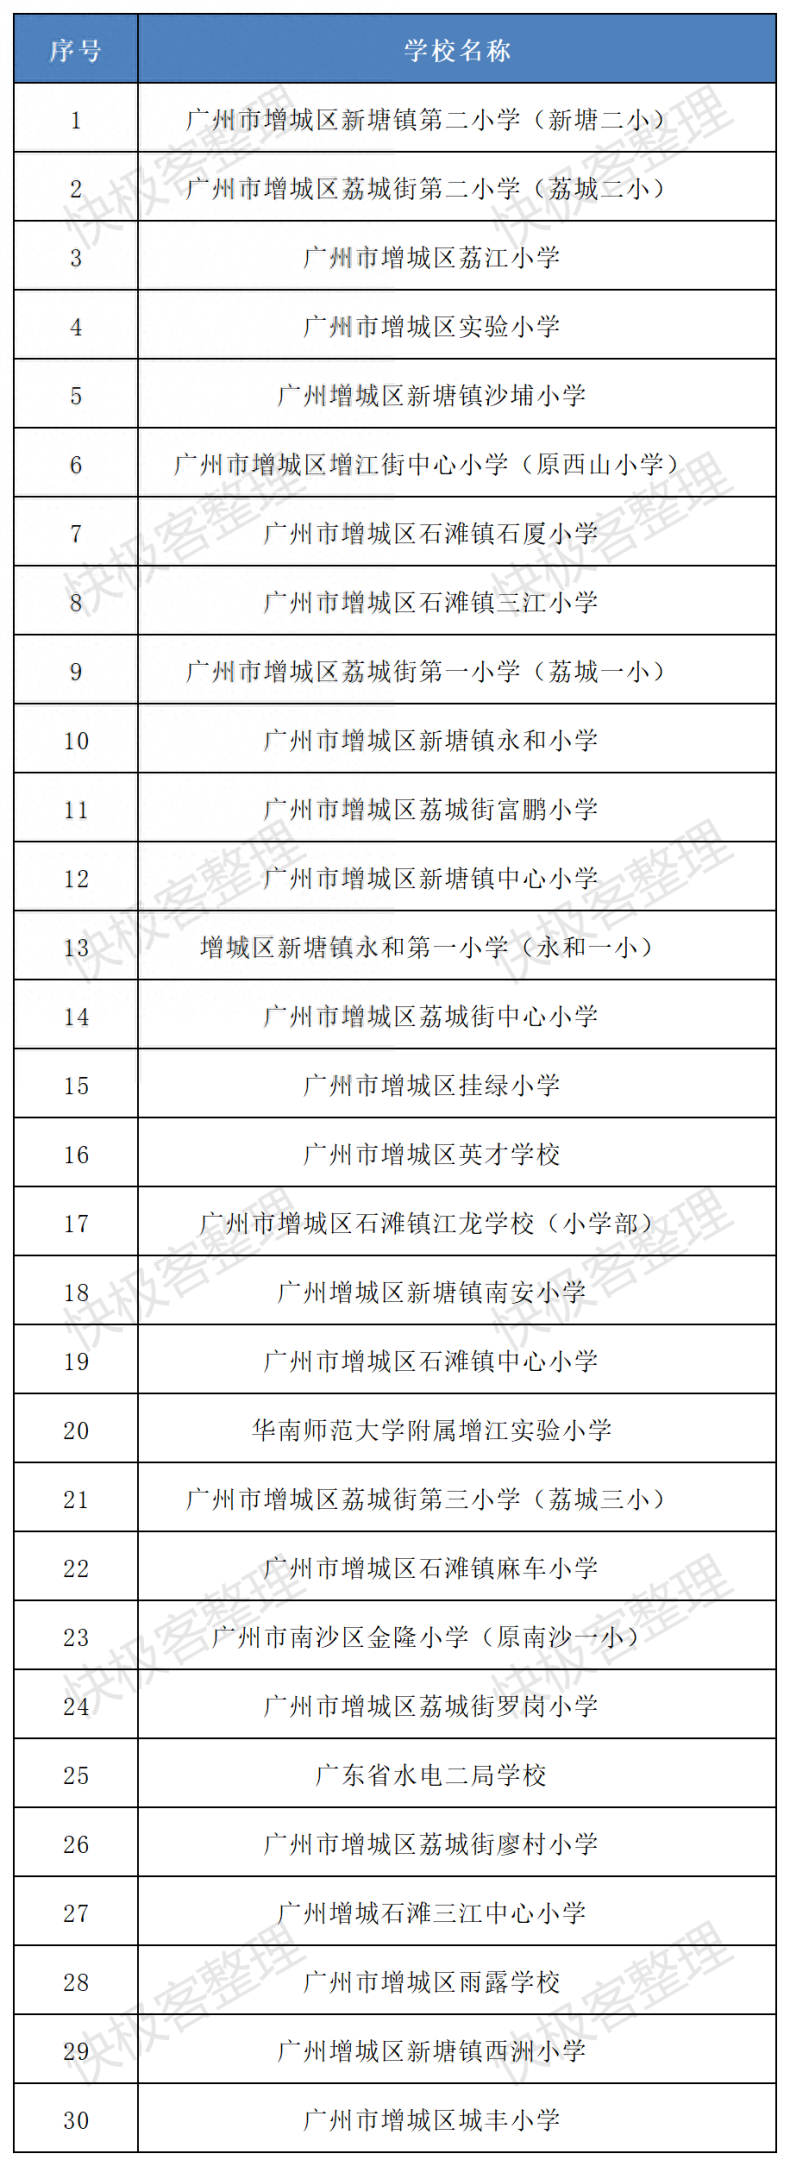 广州增城区小学排名-1